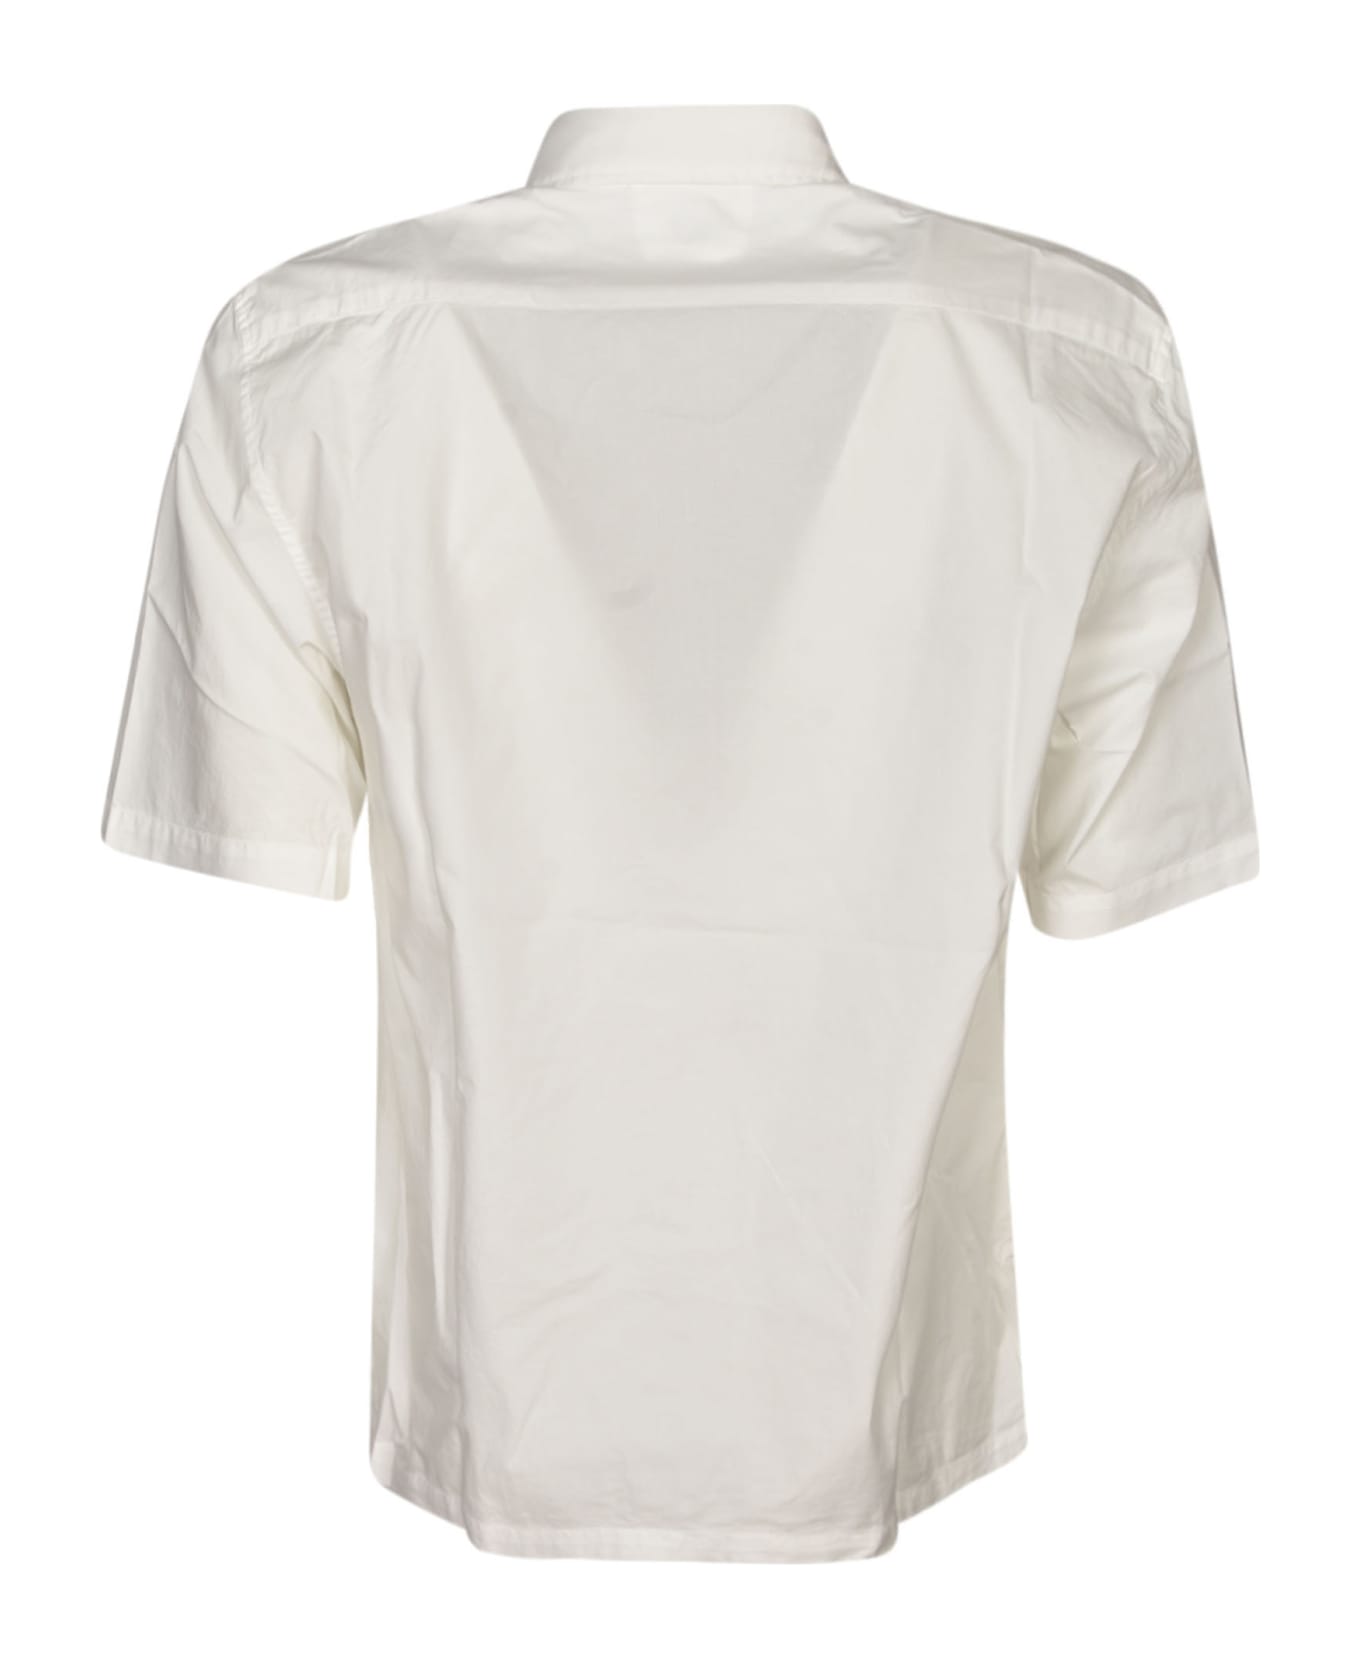 C.P. Company Oversized Pocket Short-sleeved Shirt - Gauze White シャツ